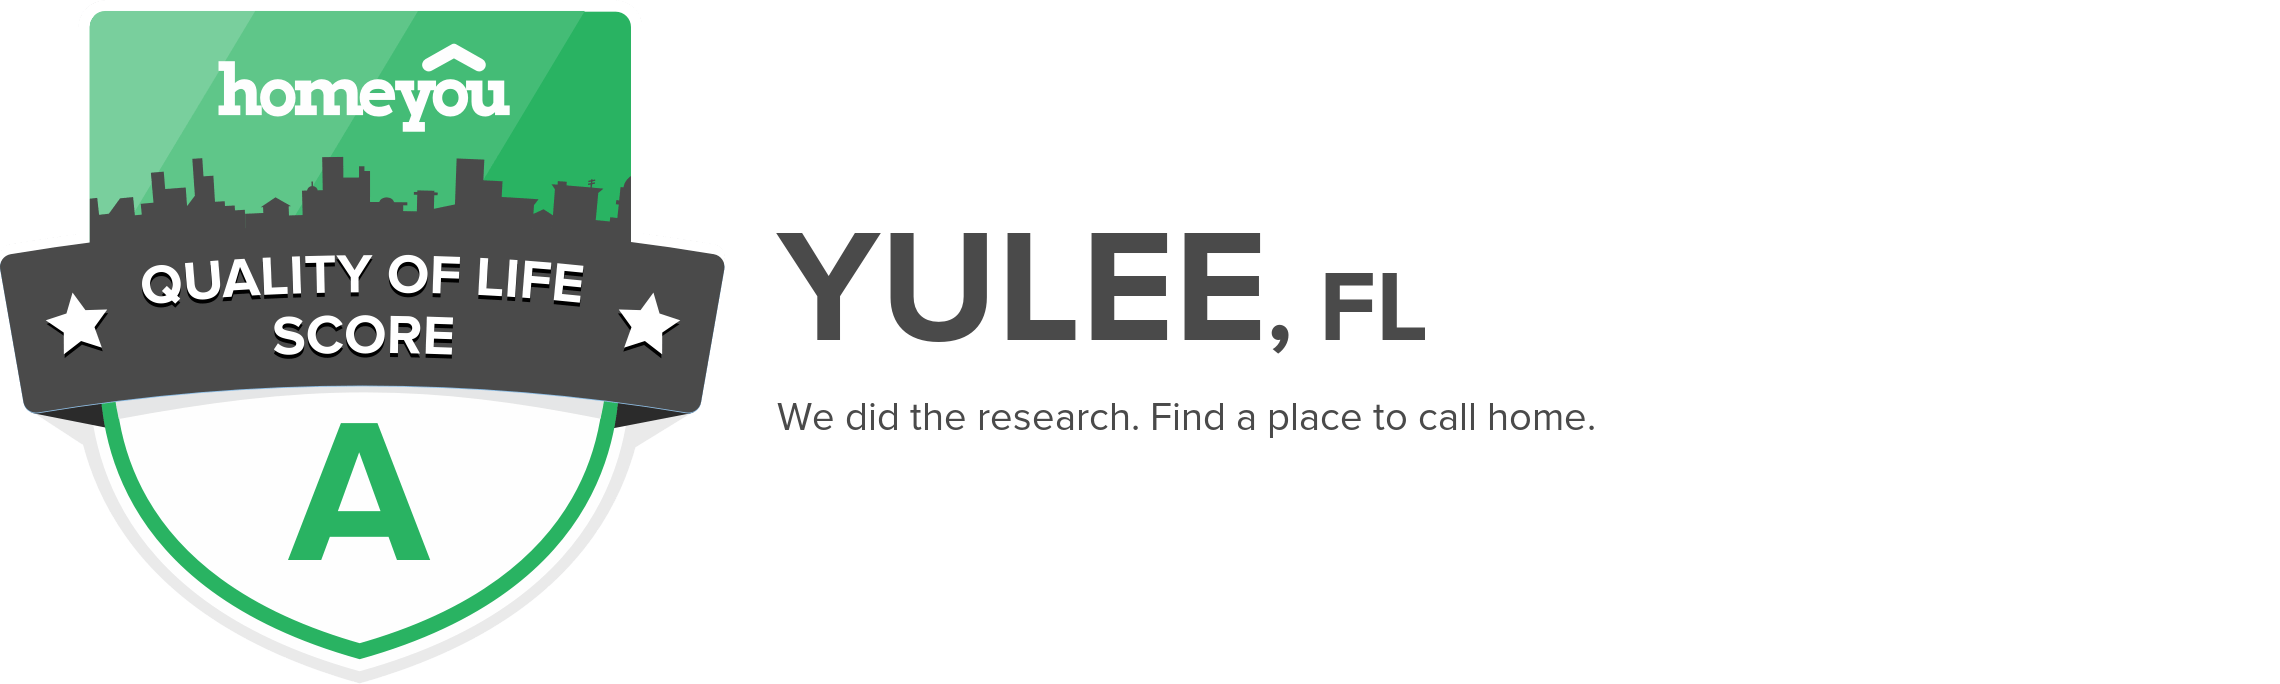 Yulee, FL